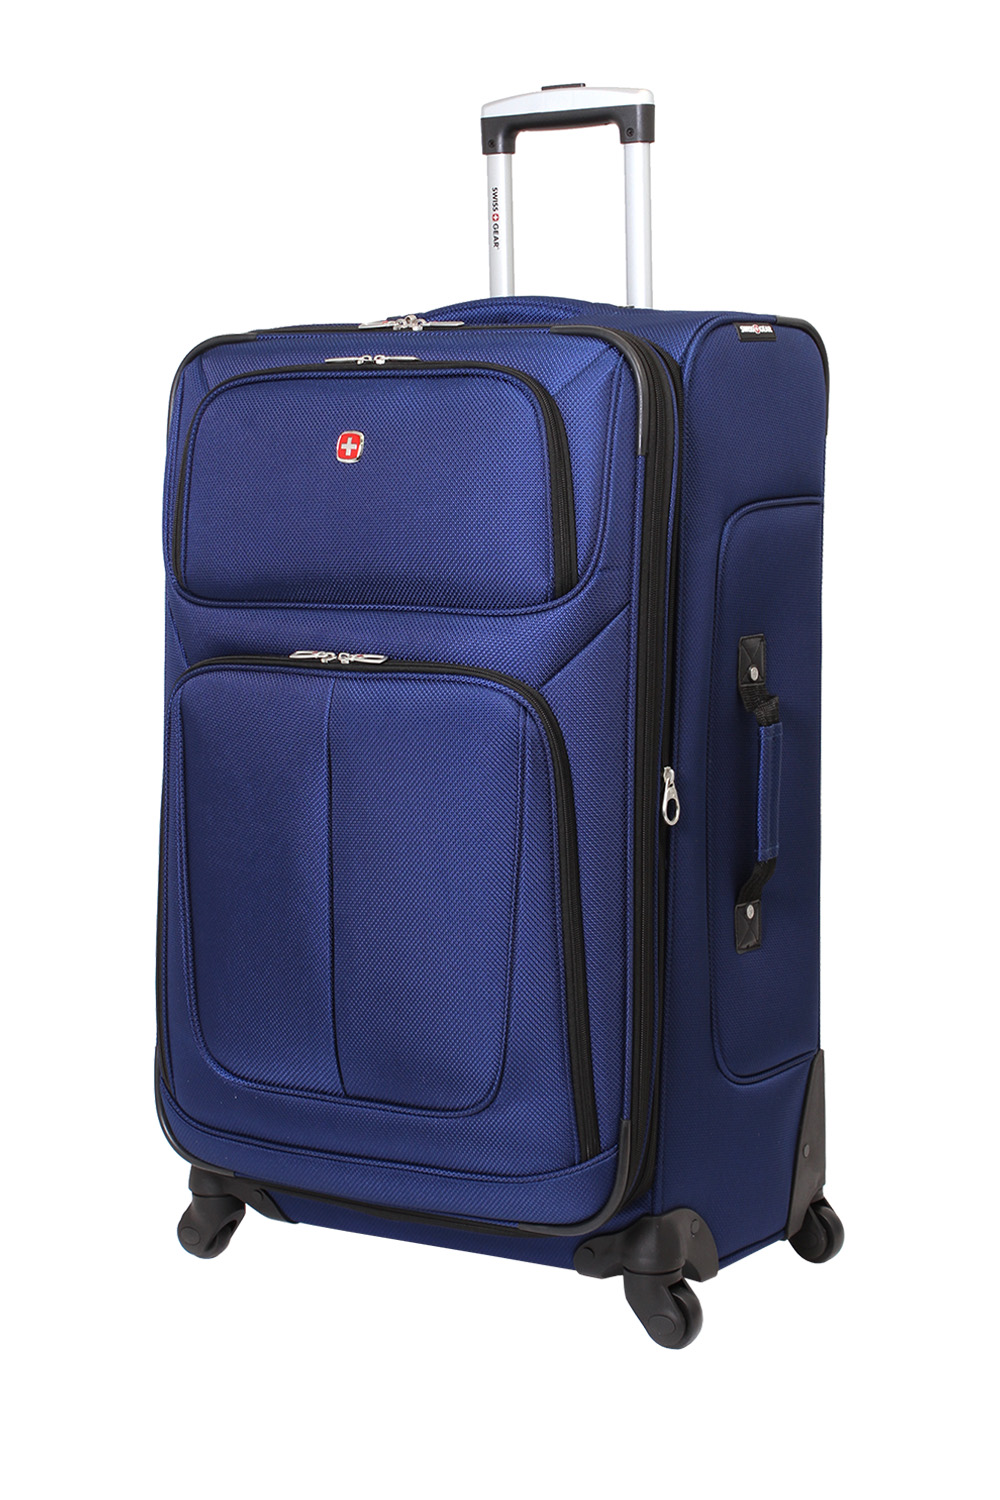 expandable luggage